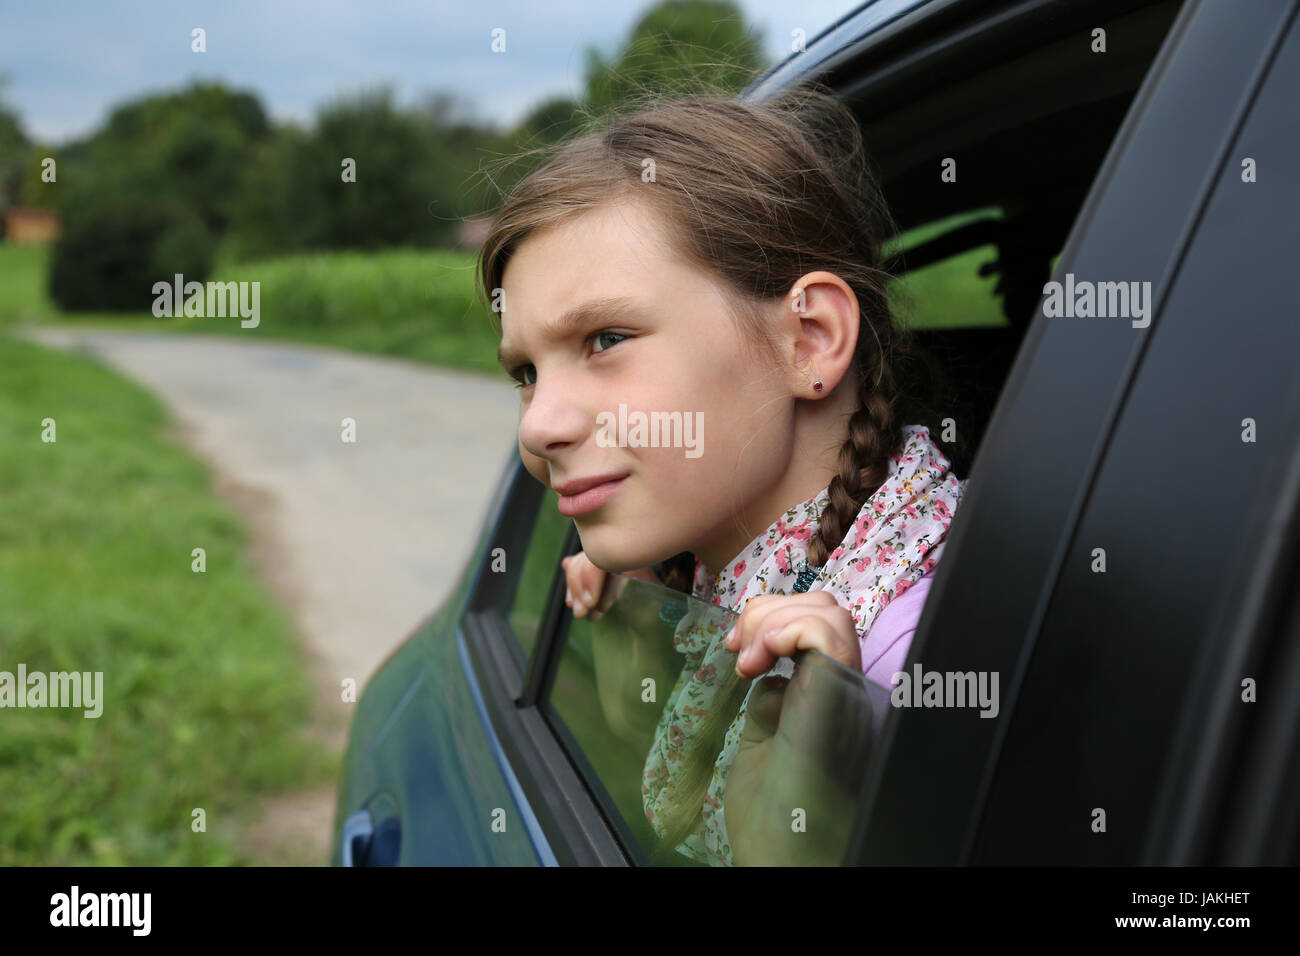 Ein kleines Mädchen schaut aus dem Fenster von einem Auto Stock Photo